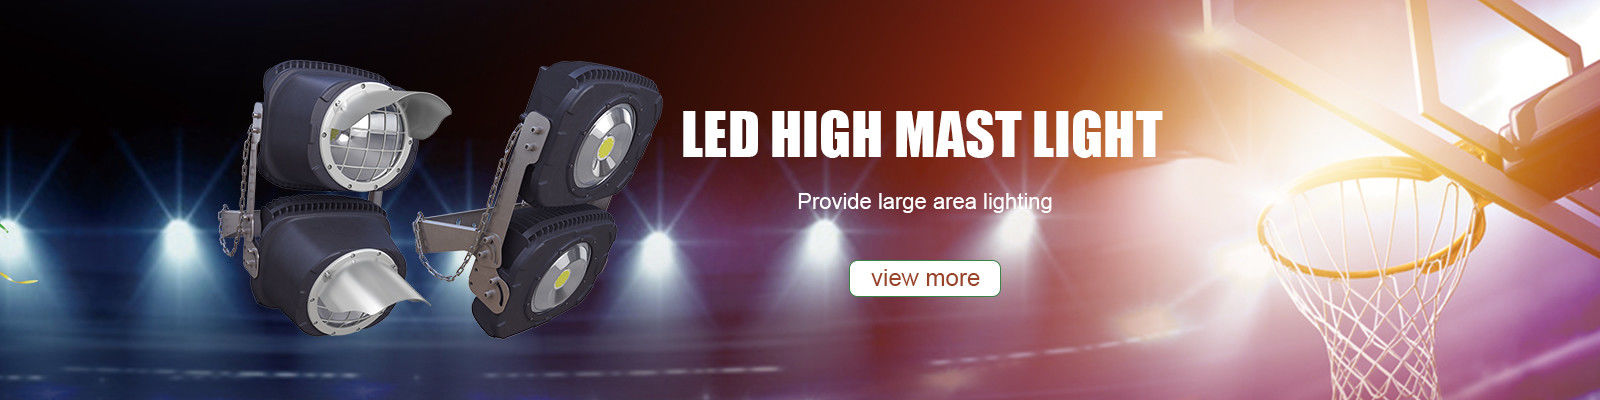 জলরোধী LED ফ্লাড লাইট